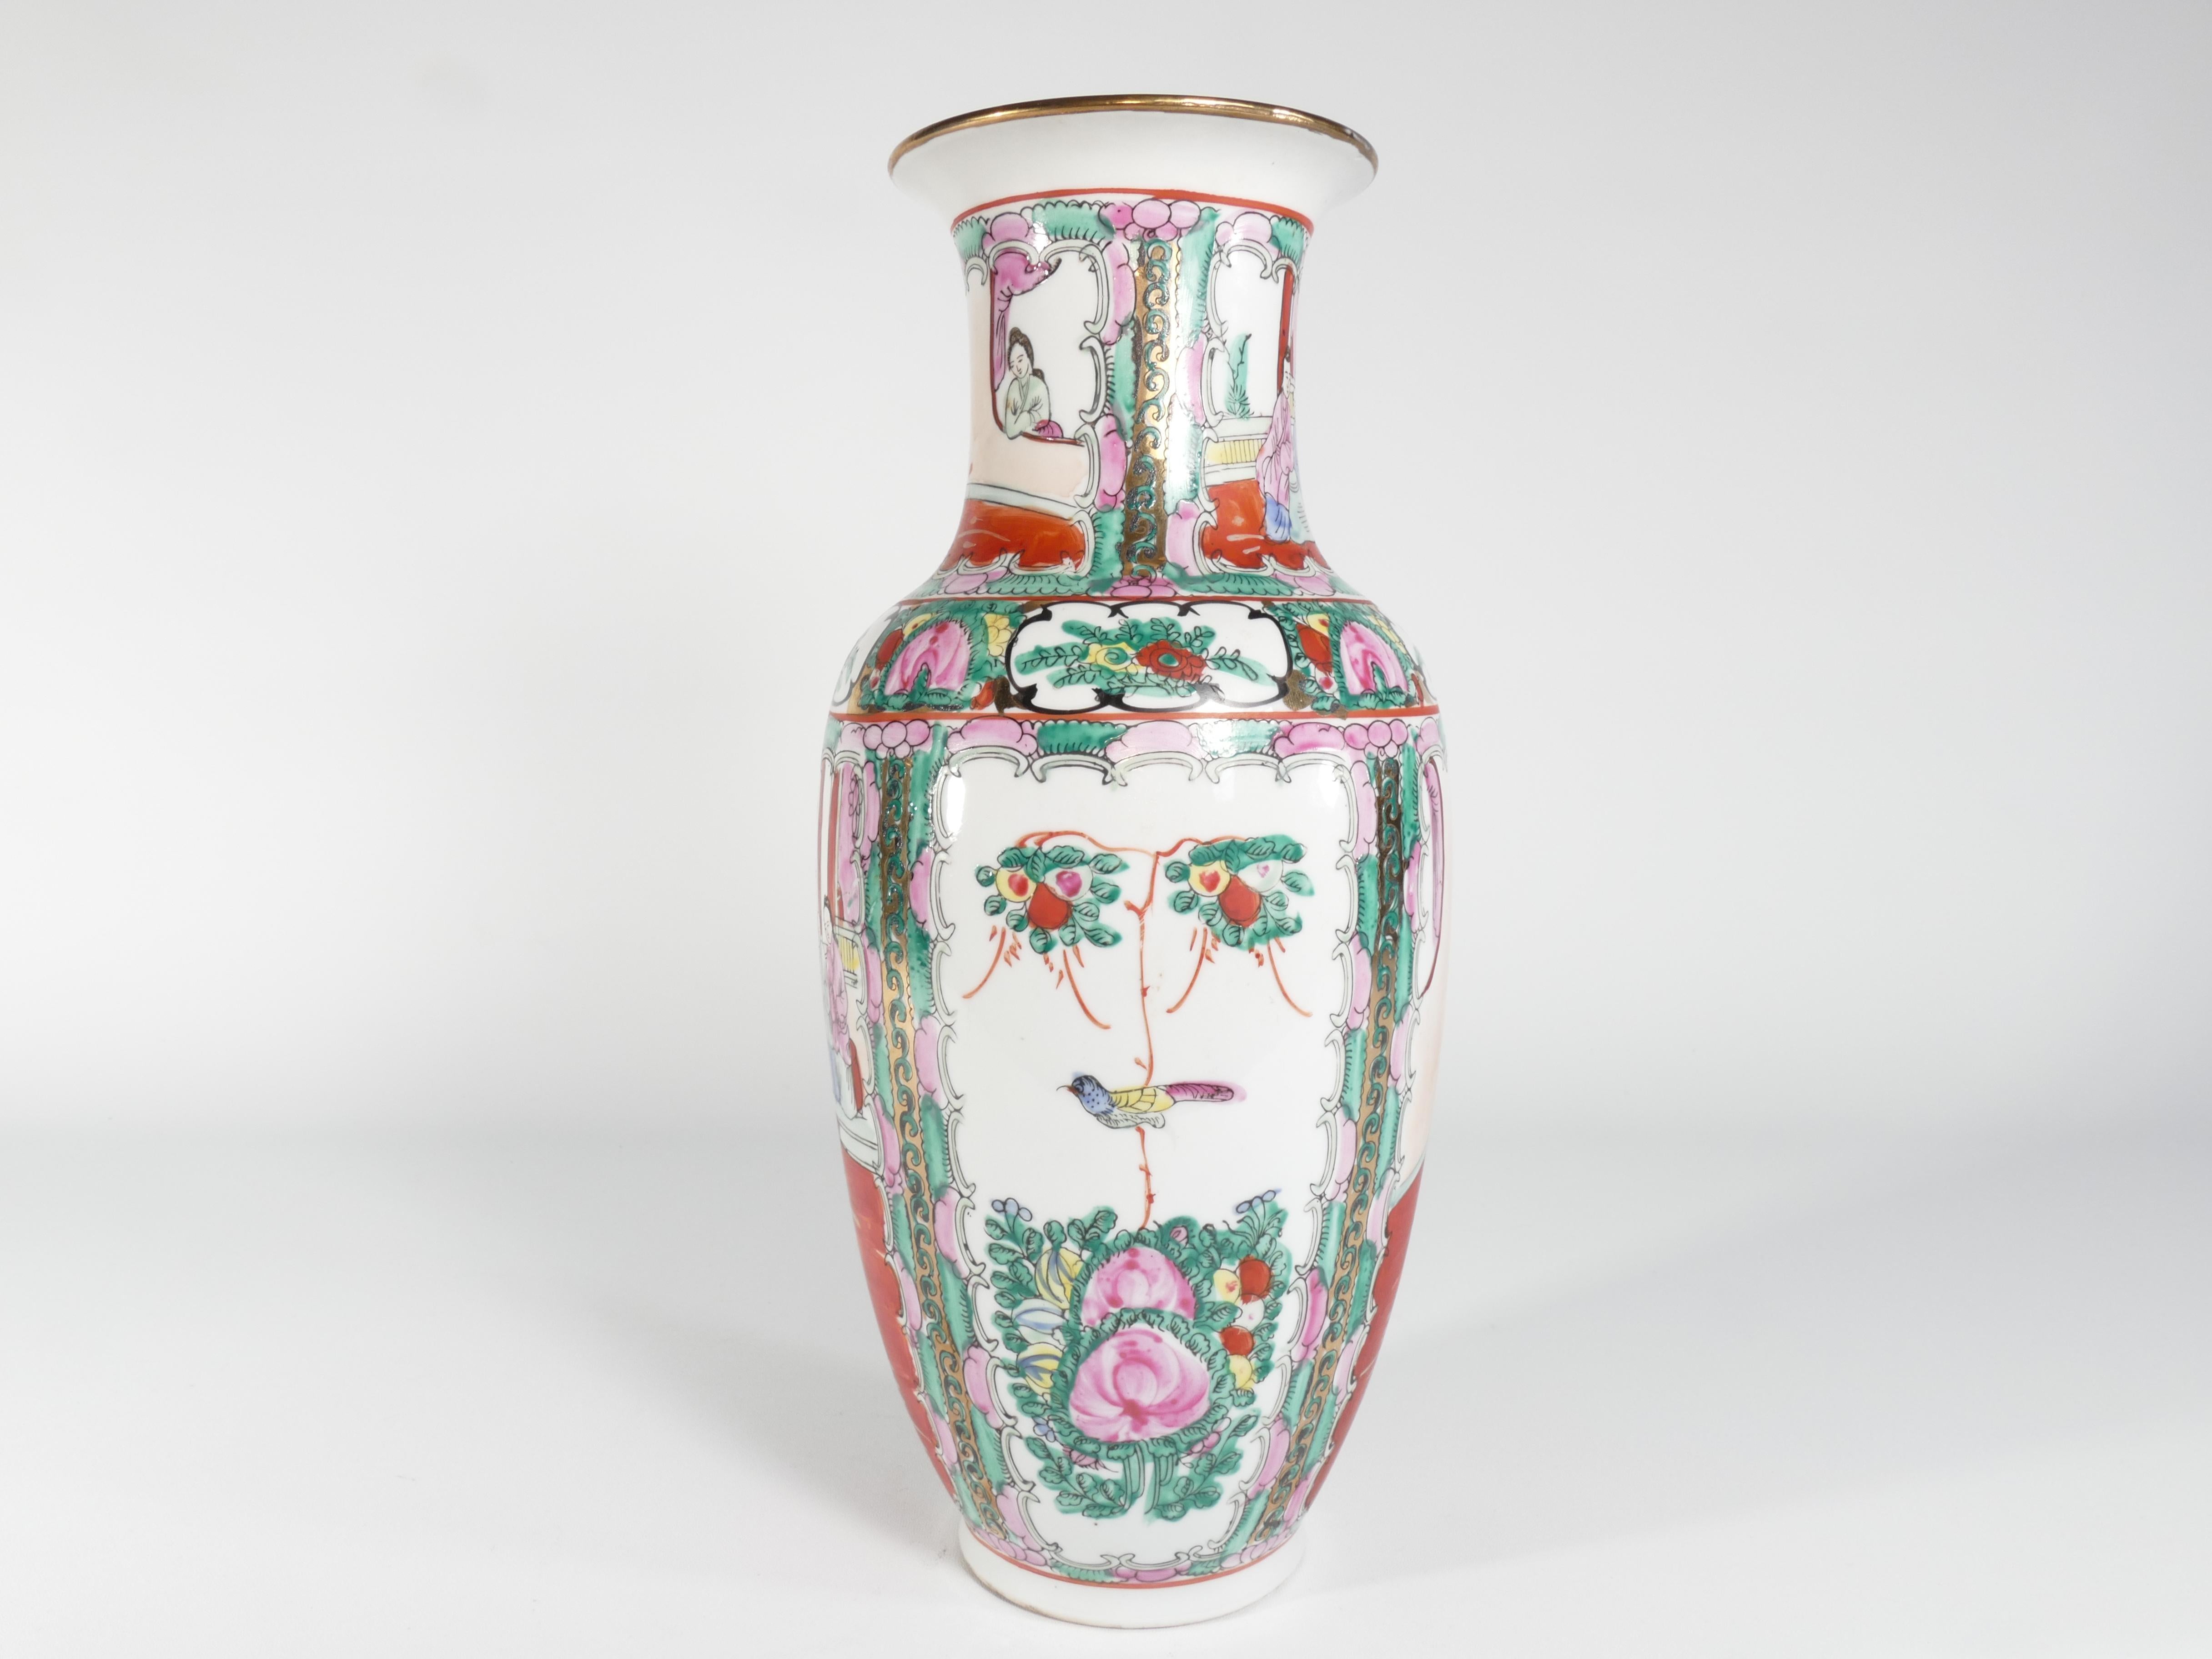 Un grand vase médaillon de la famille rose chinoise. Ce vase est peint à la main avec le motif traditionnel chinois du médaillon de roses, incorporant des teintes rouges, roses et vertes ainsi que des accents dorés, jaunes, noirs et bleus. Le corps